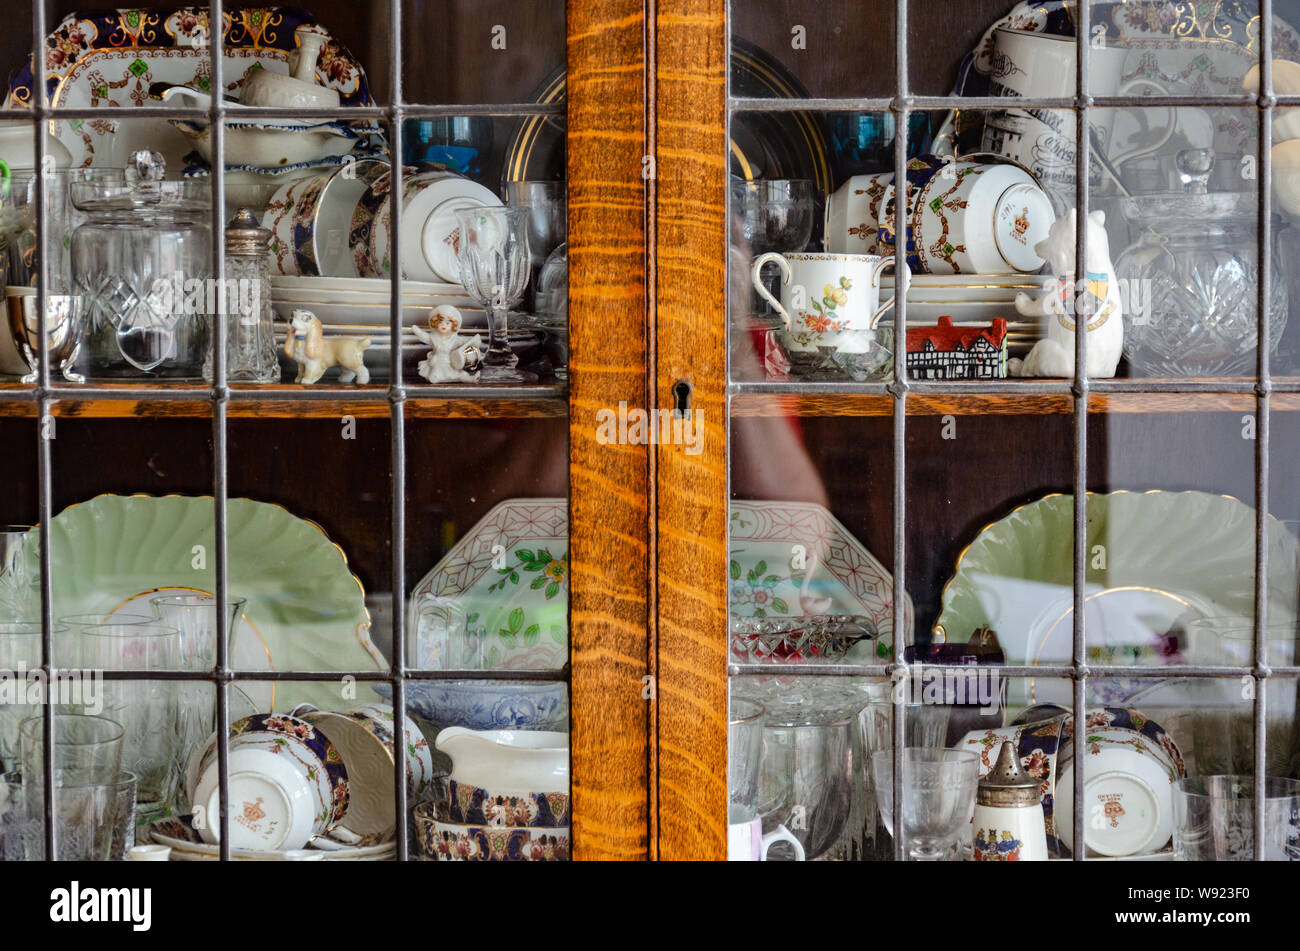 Nähe zu sehen, Teller, Tassen, Untertassen und Sammlerstücke auf einem Regal in einem glas Vitrine. Stockfoto